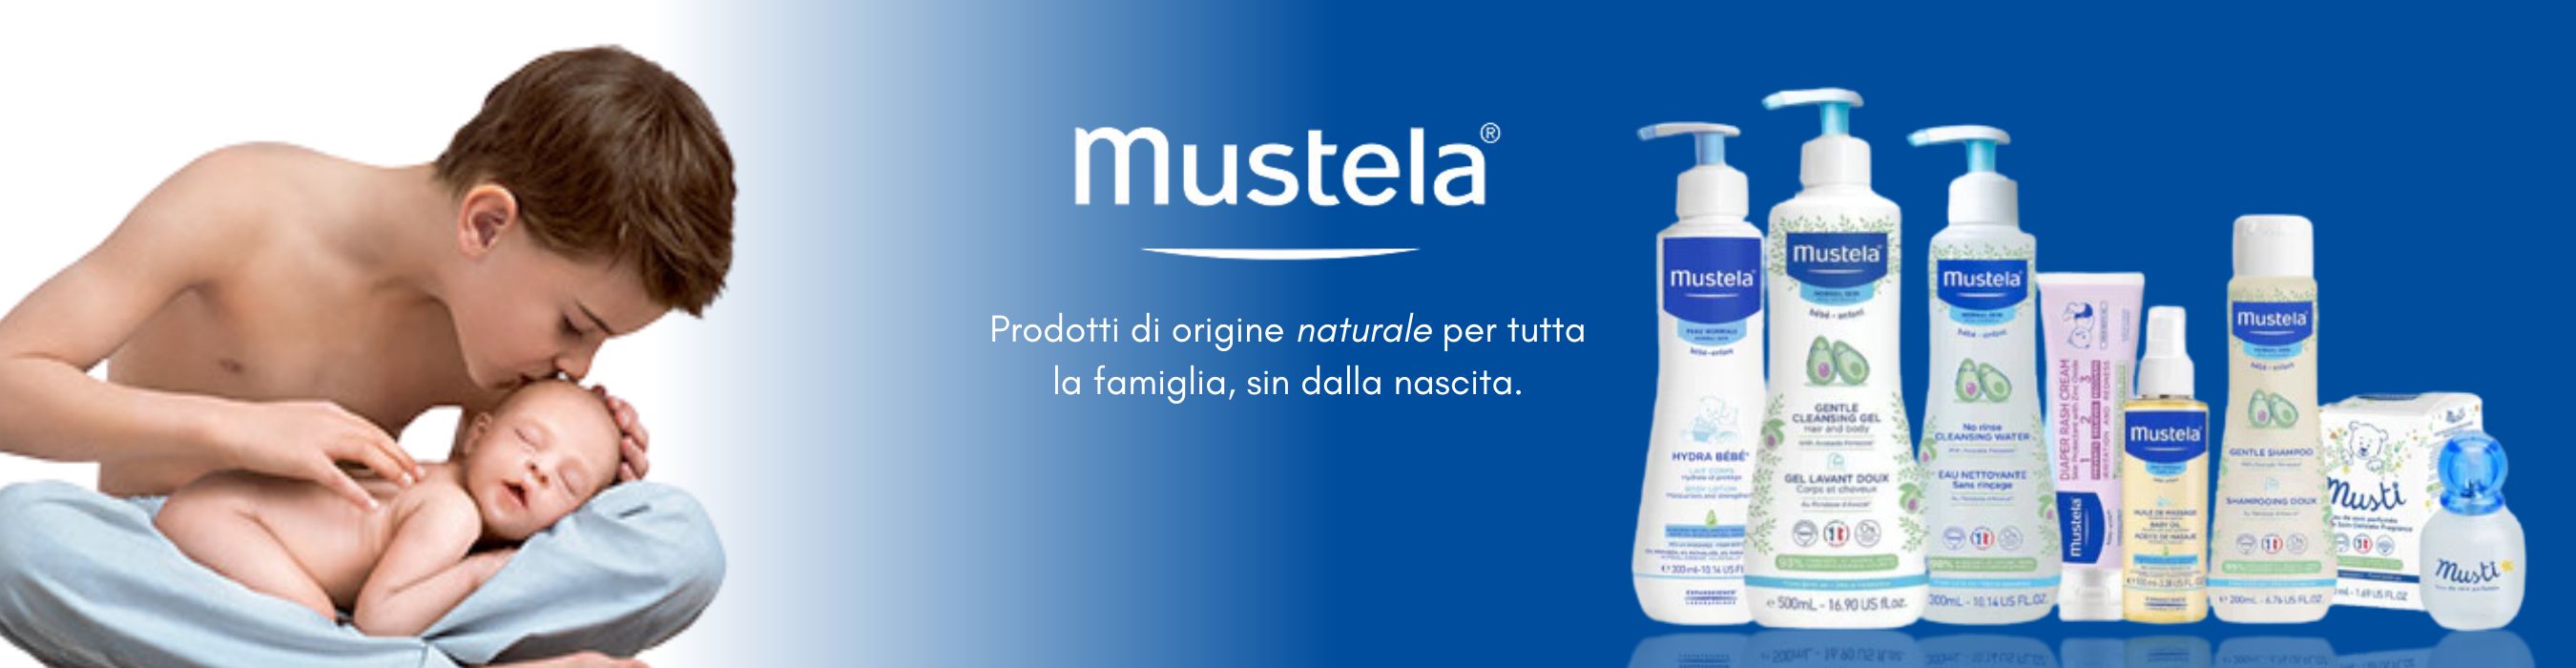 Mustela: offerte e vendita prodotti online Farmacia Europea